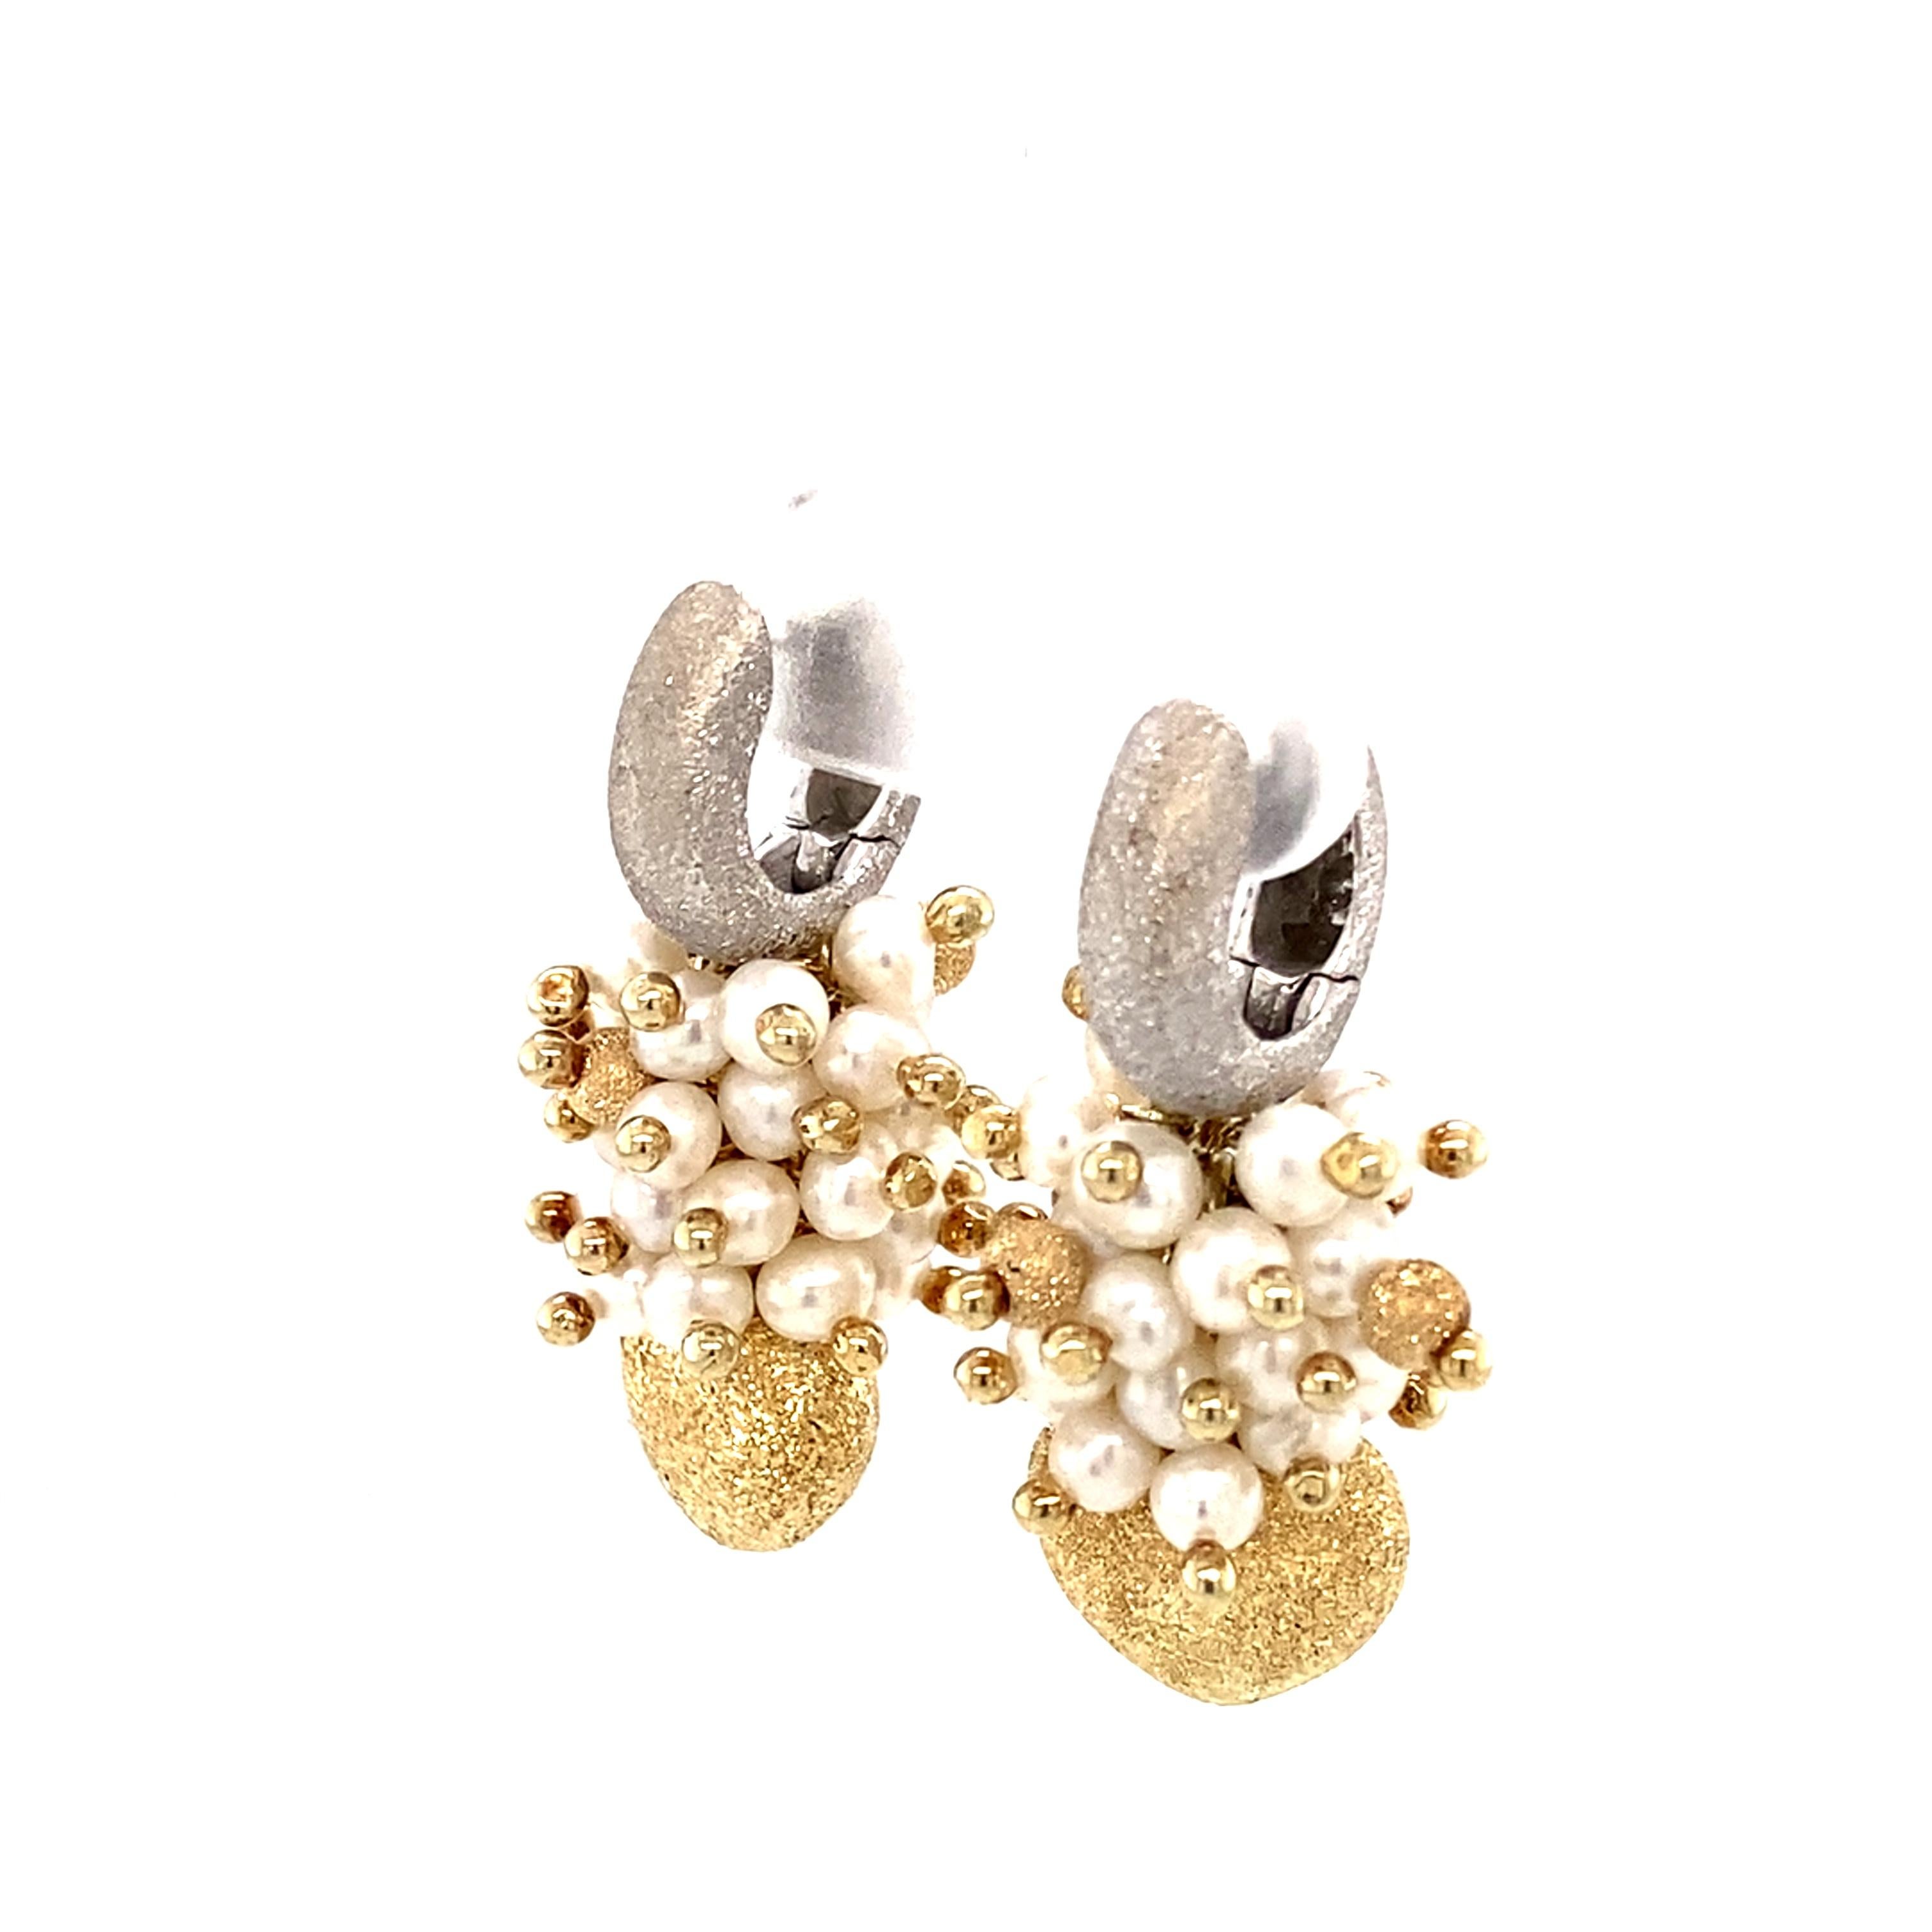 1940s pearl earrings